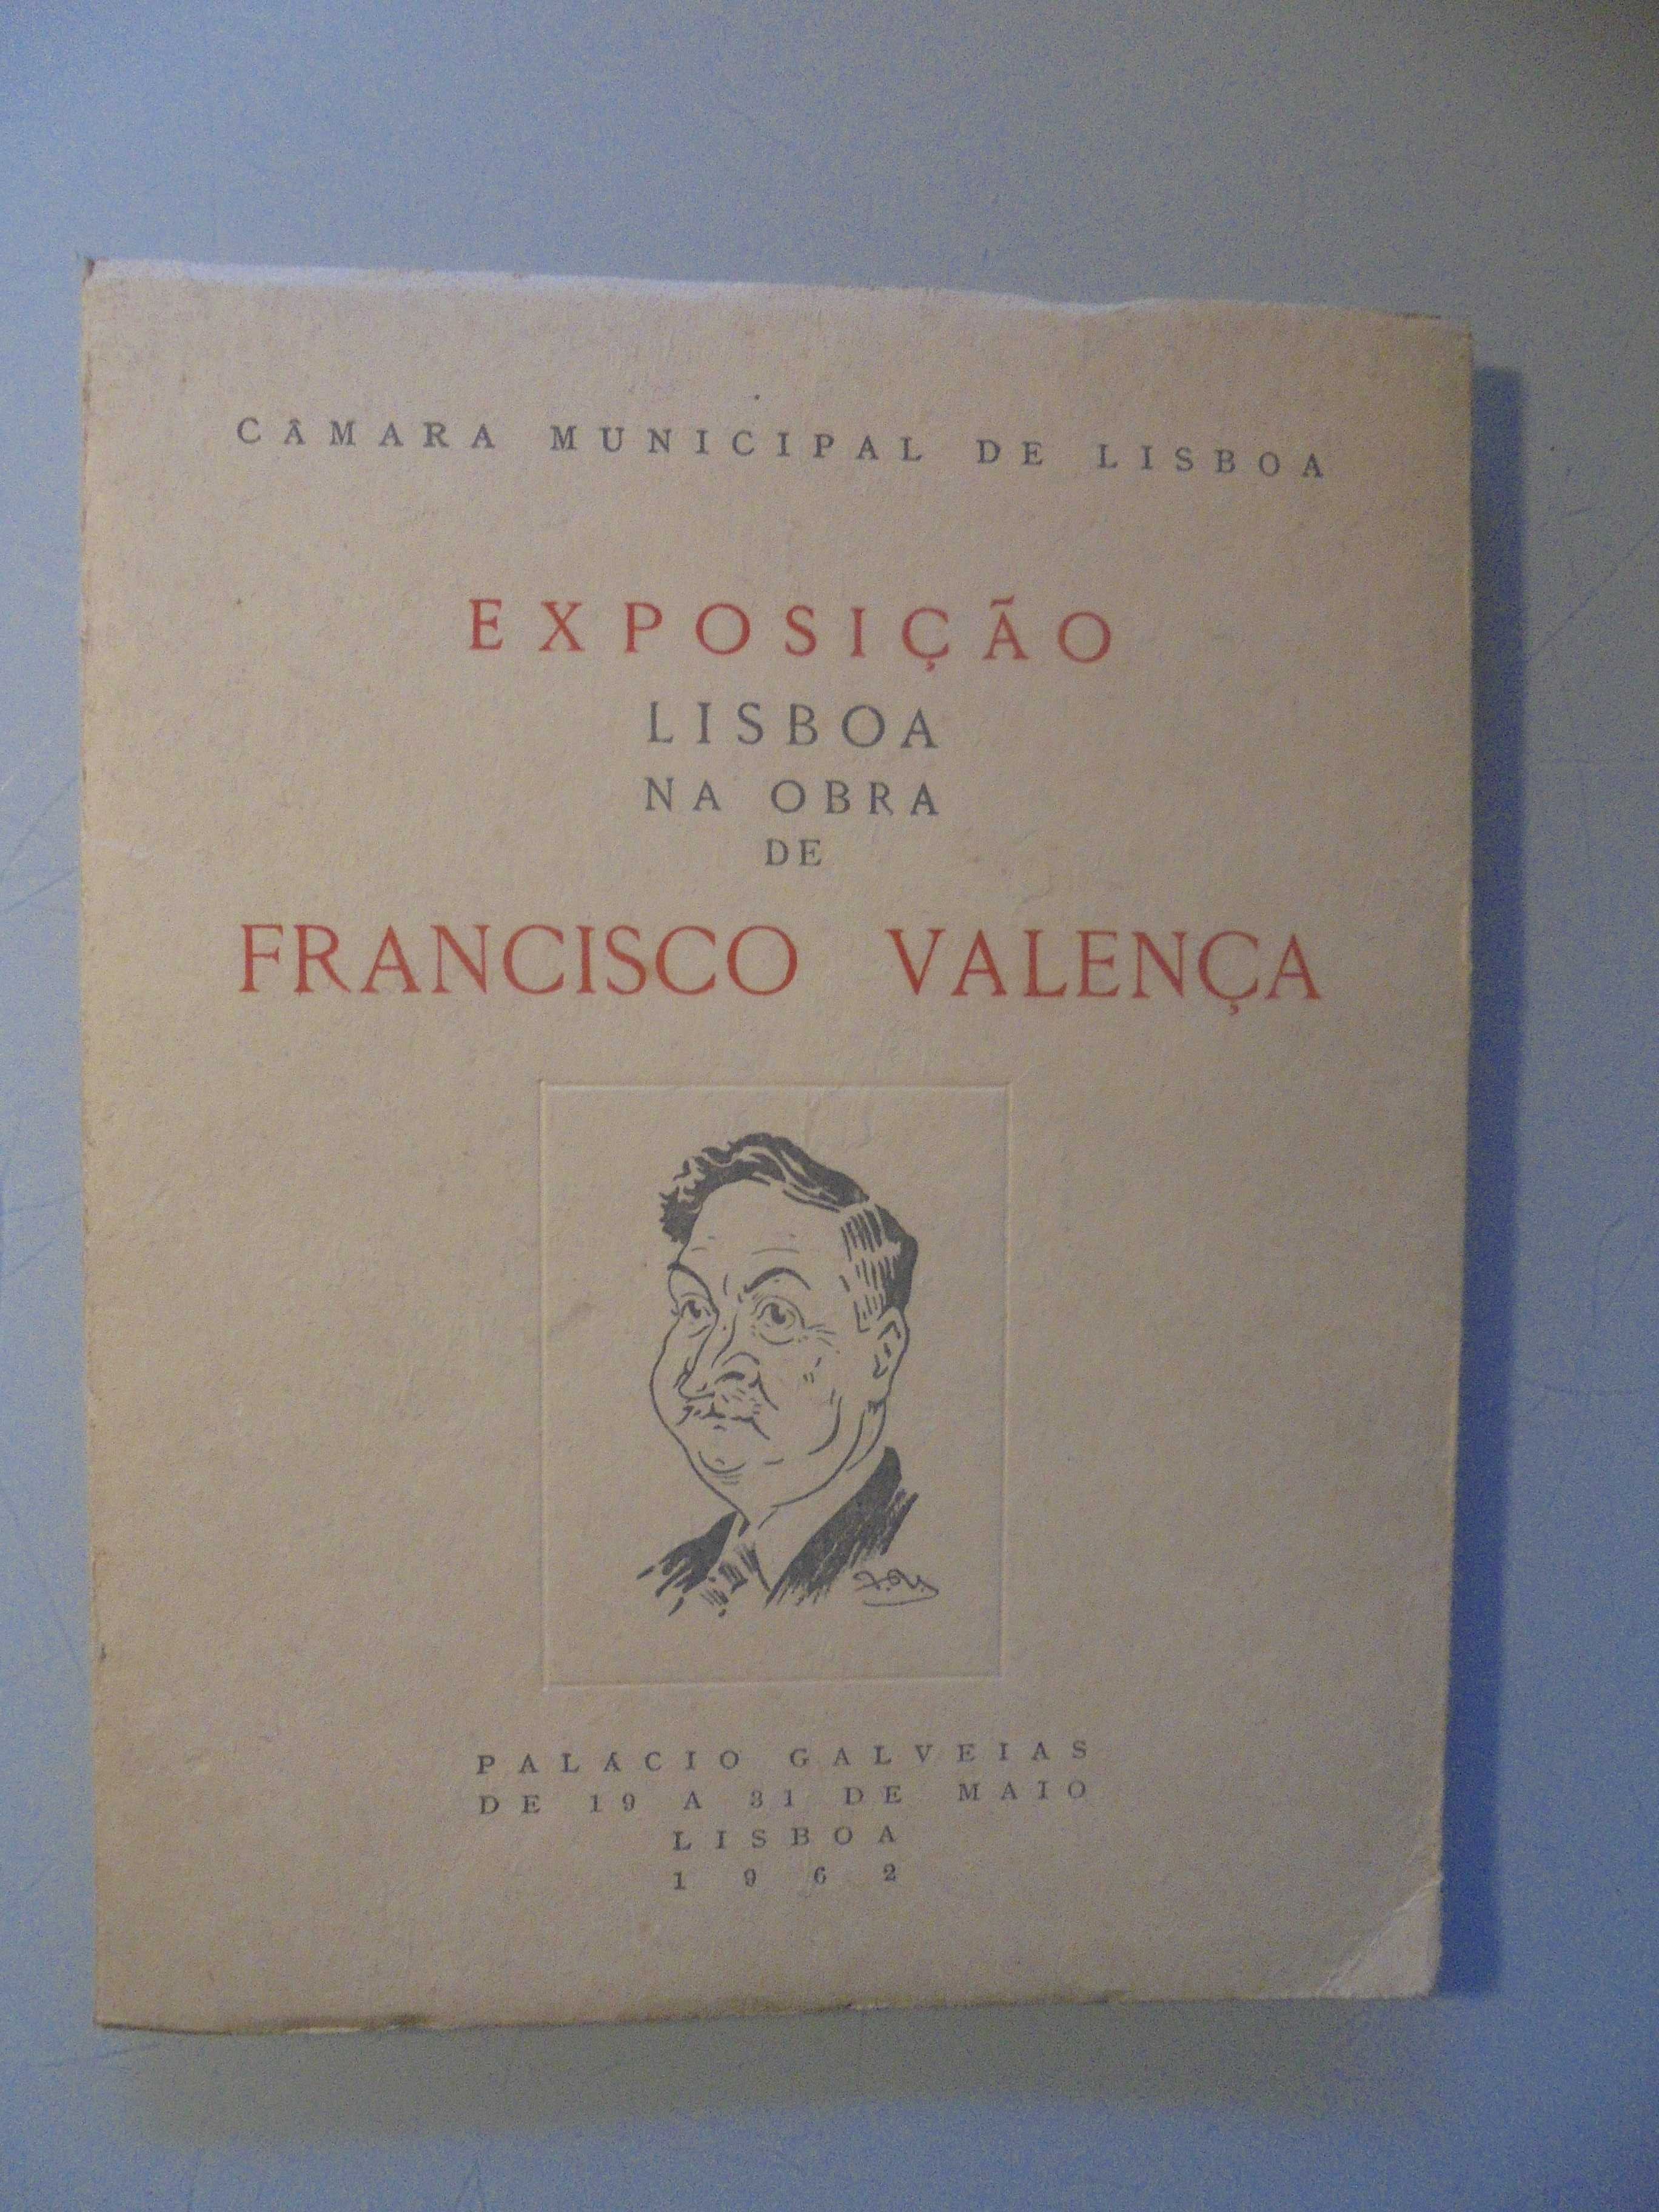 Francisco Valença Exposição-Palácio Galveias,1962